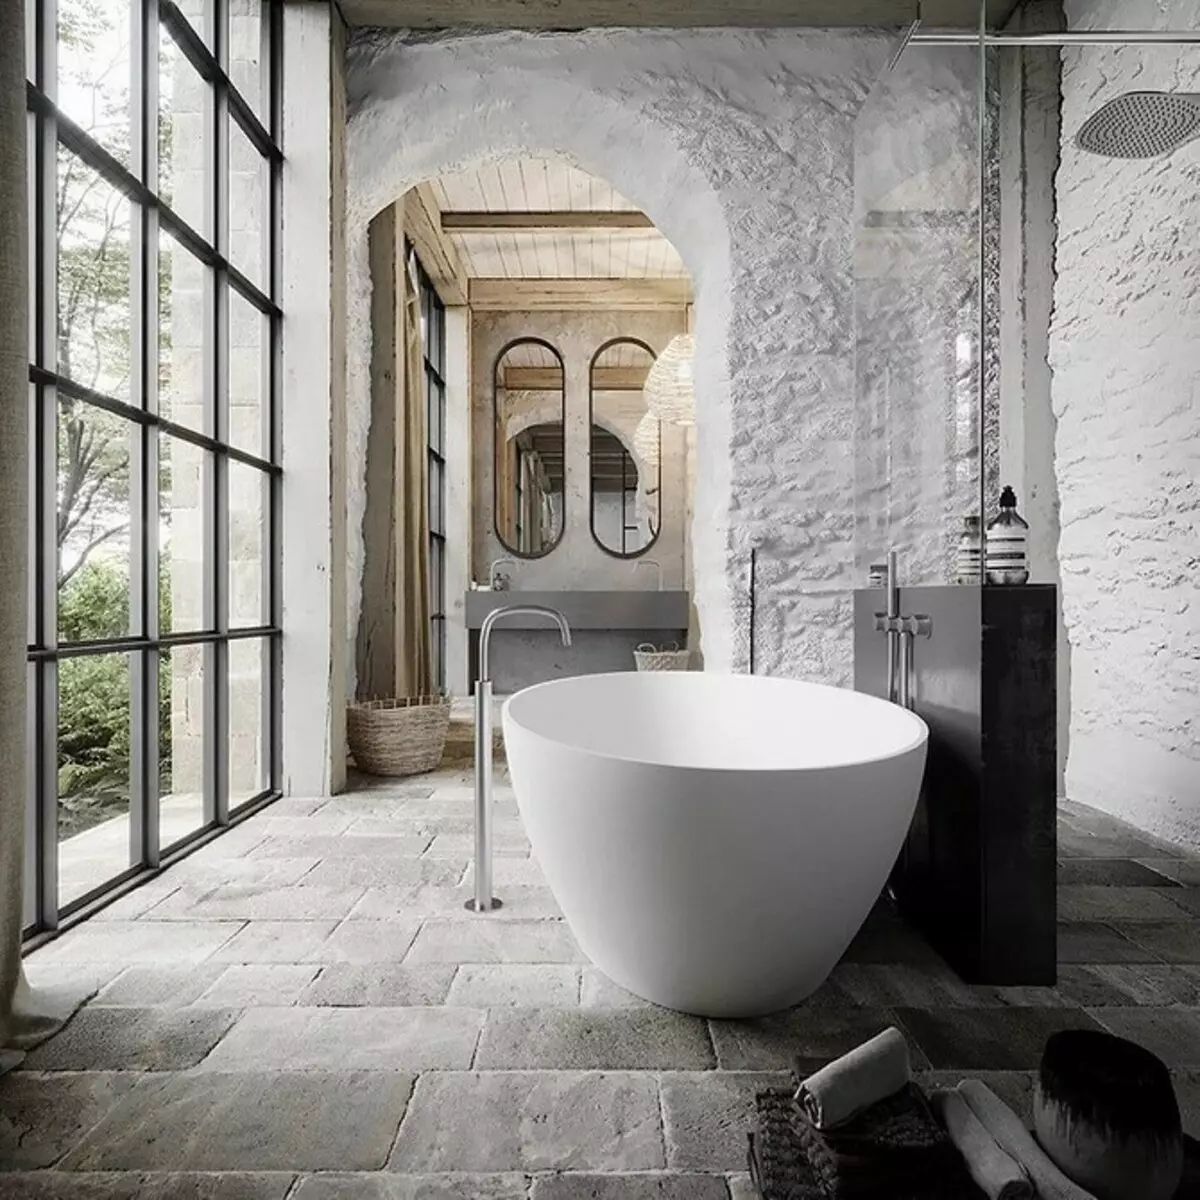 Design de banheiro com chuveiro e banho: Idéias interiores em 75 fotos - IVD.RU 4108_57